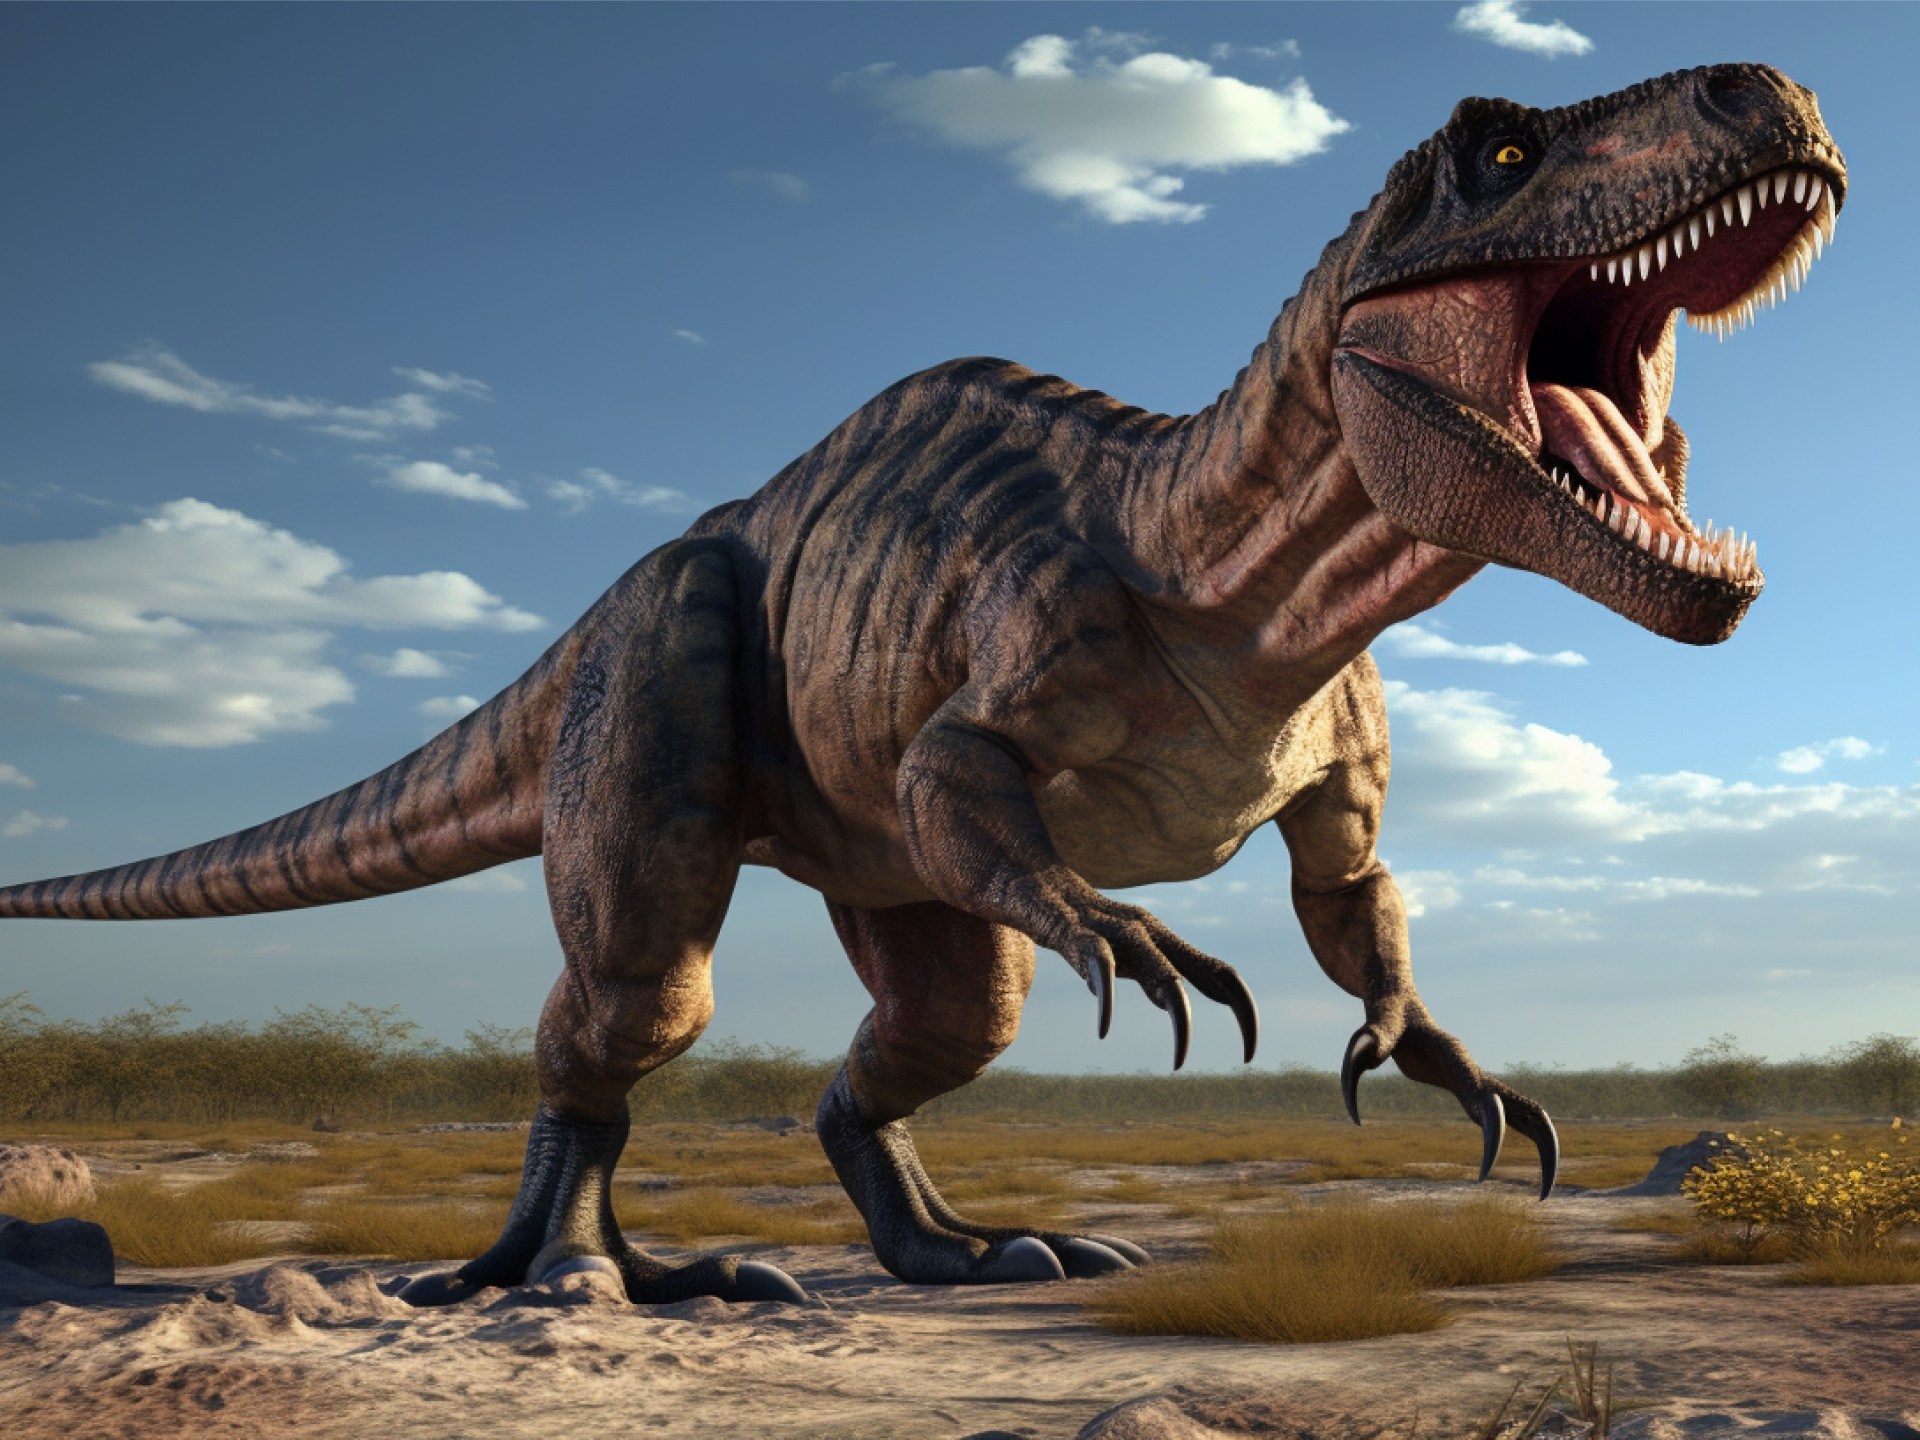 المذنب الذي ضرب الديناصورات تسبب بـ15 سنة من الشتاء القارس | علوم – البوكس نيوز